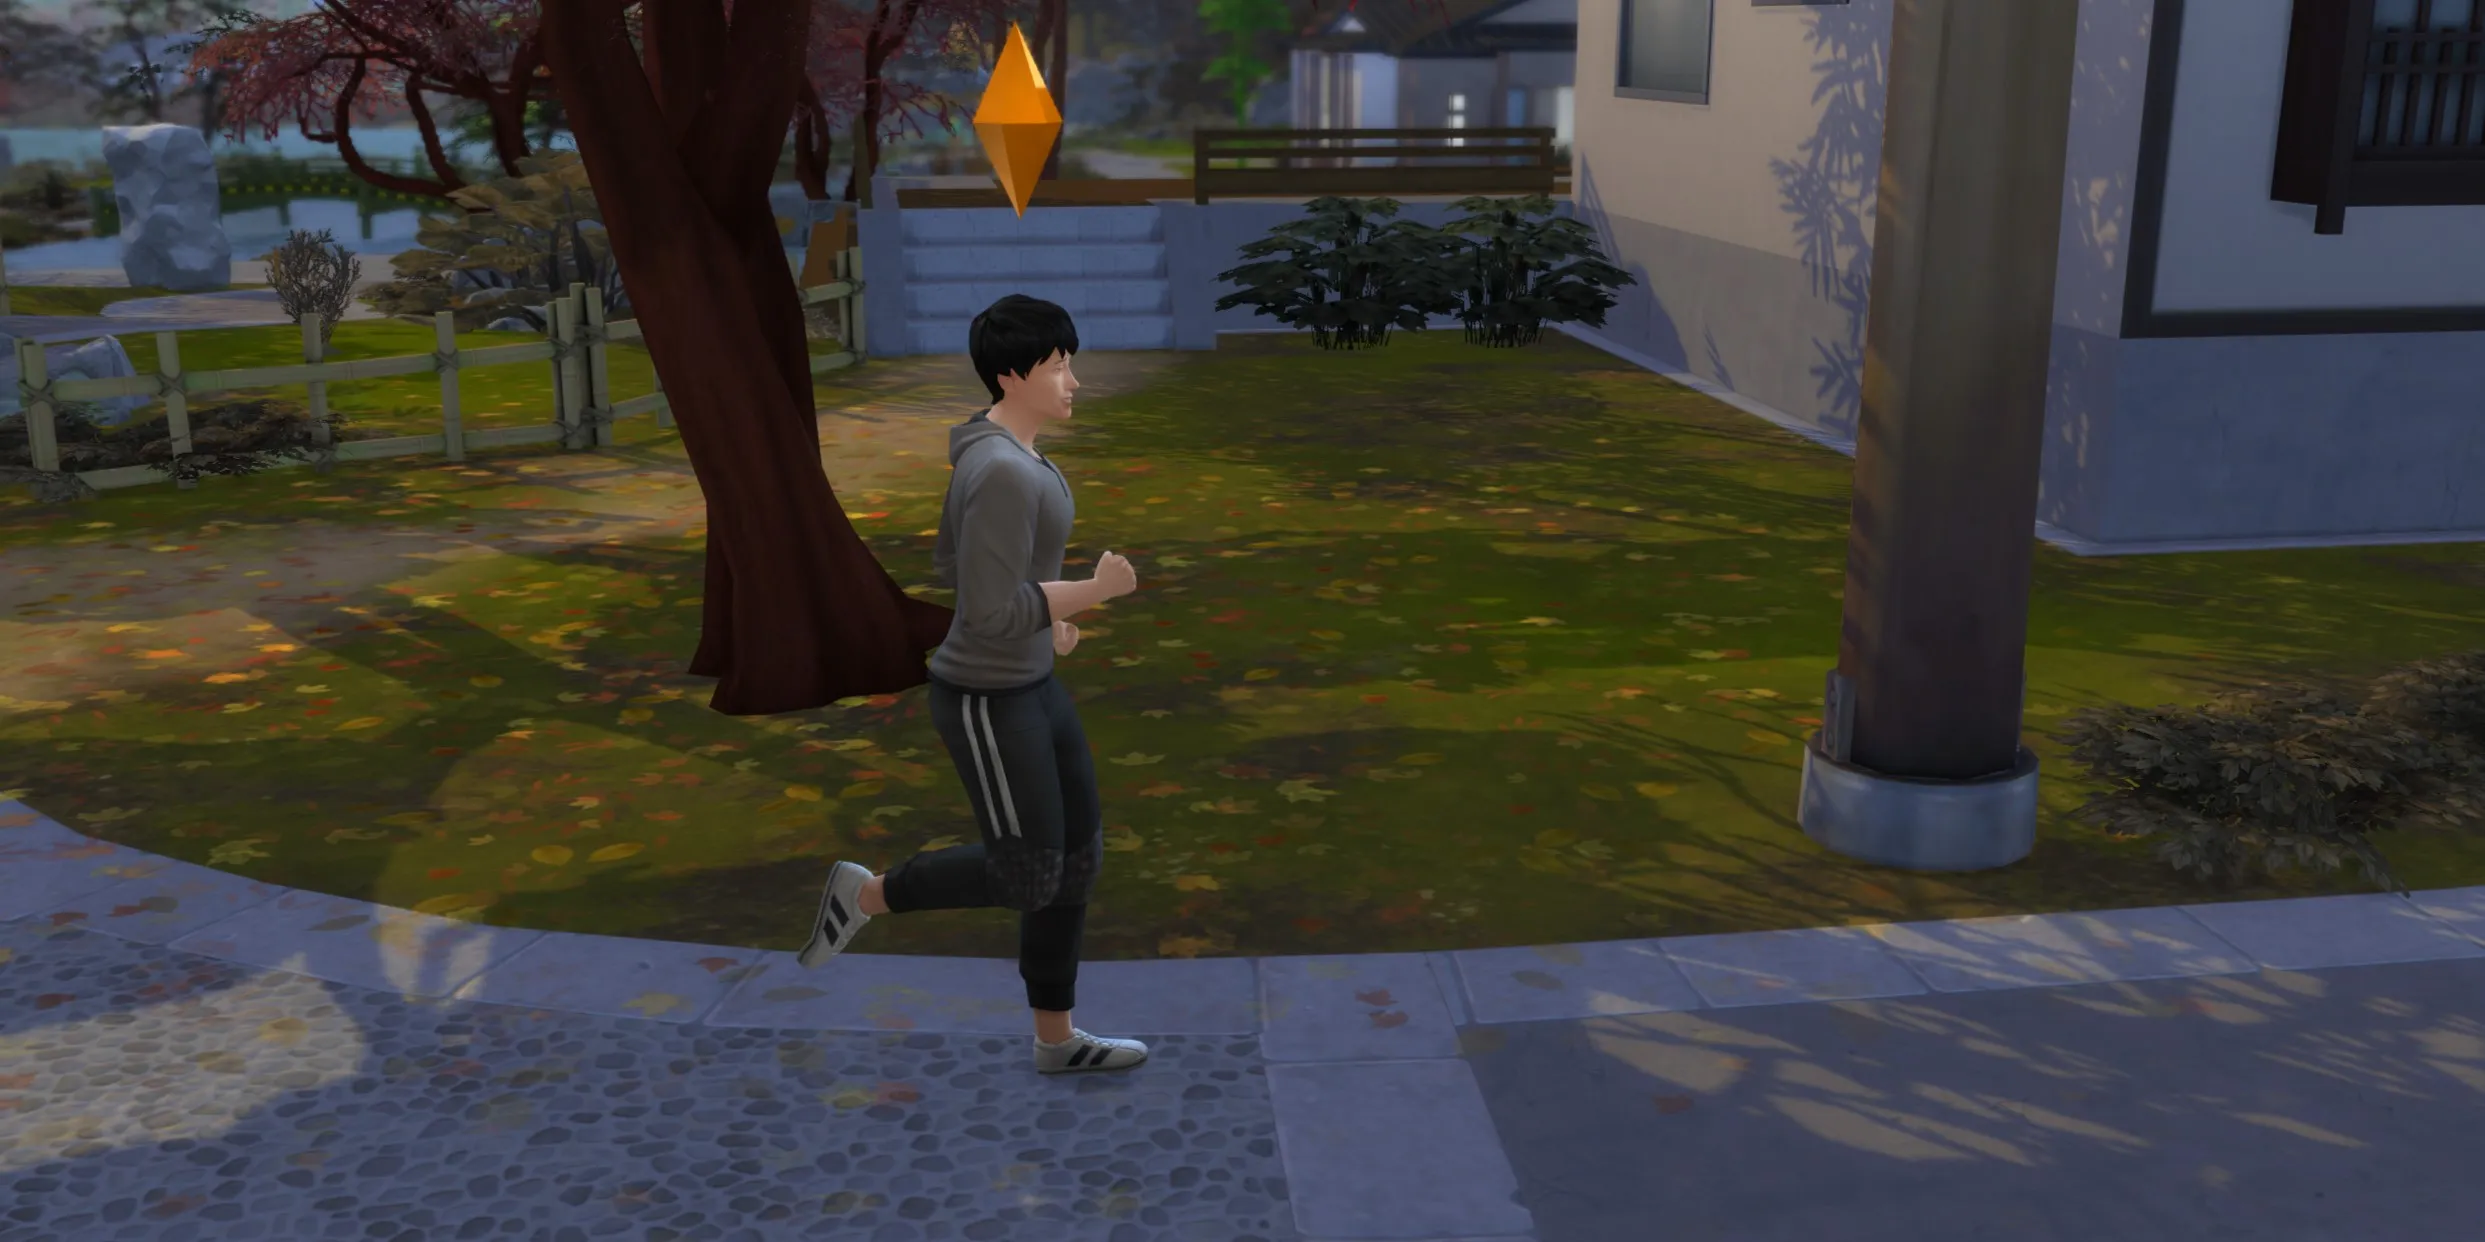 The Sims 4: 一个Sim在慢跑